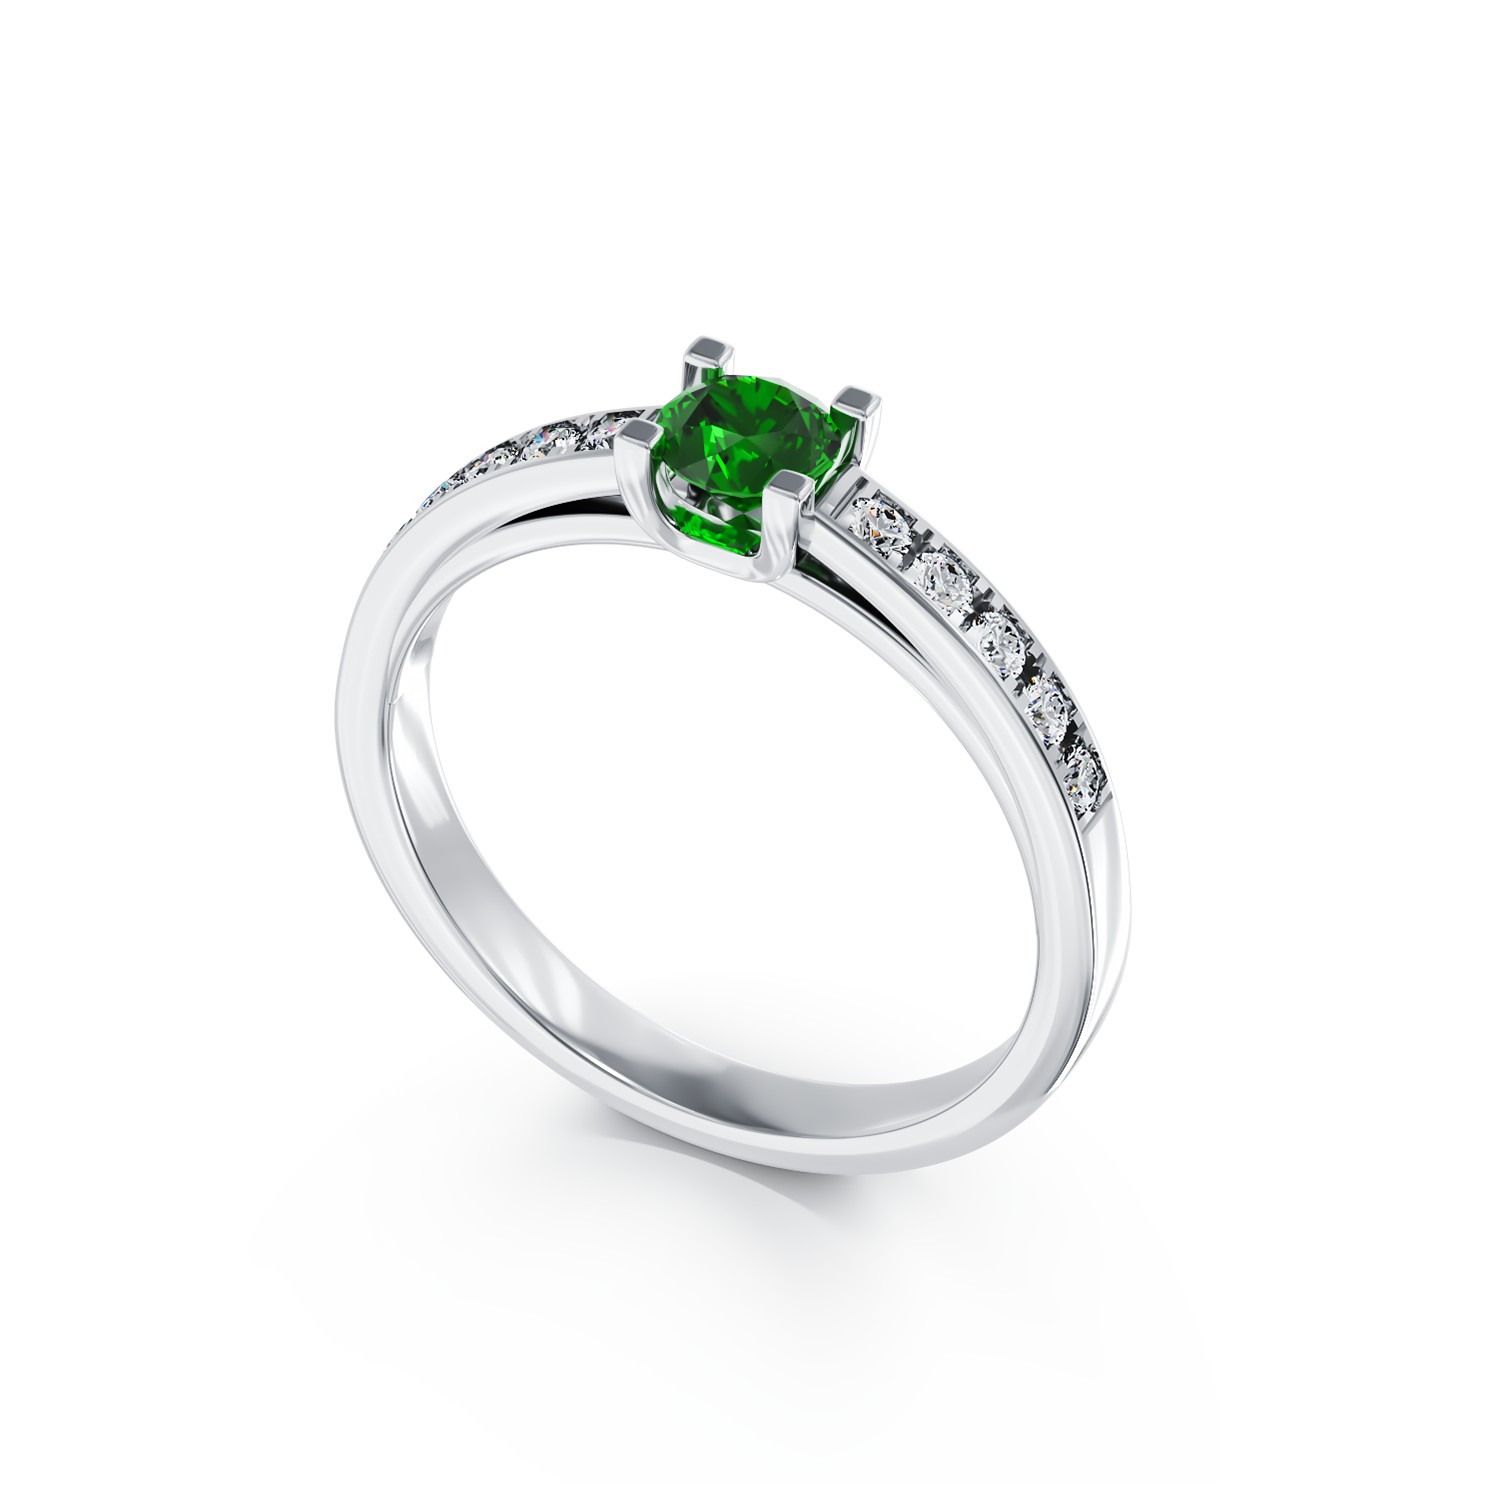 18K fehérarany eljegyzési gyűrű 0.25ct smaragddal és 0.15ct gyémántokkal